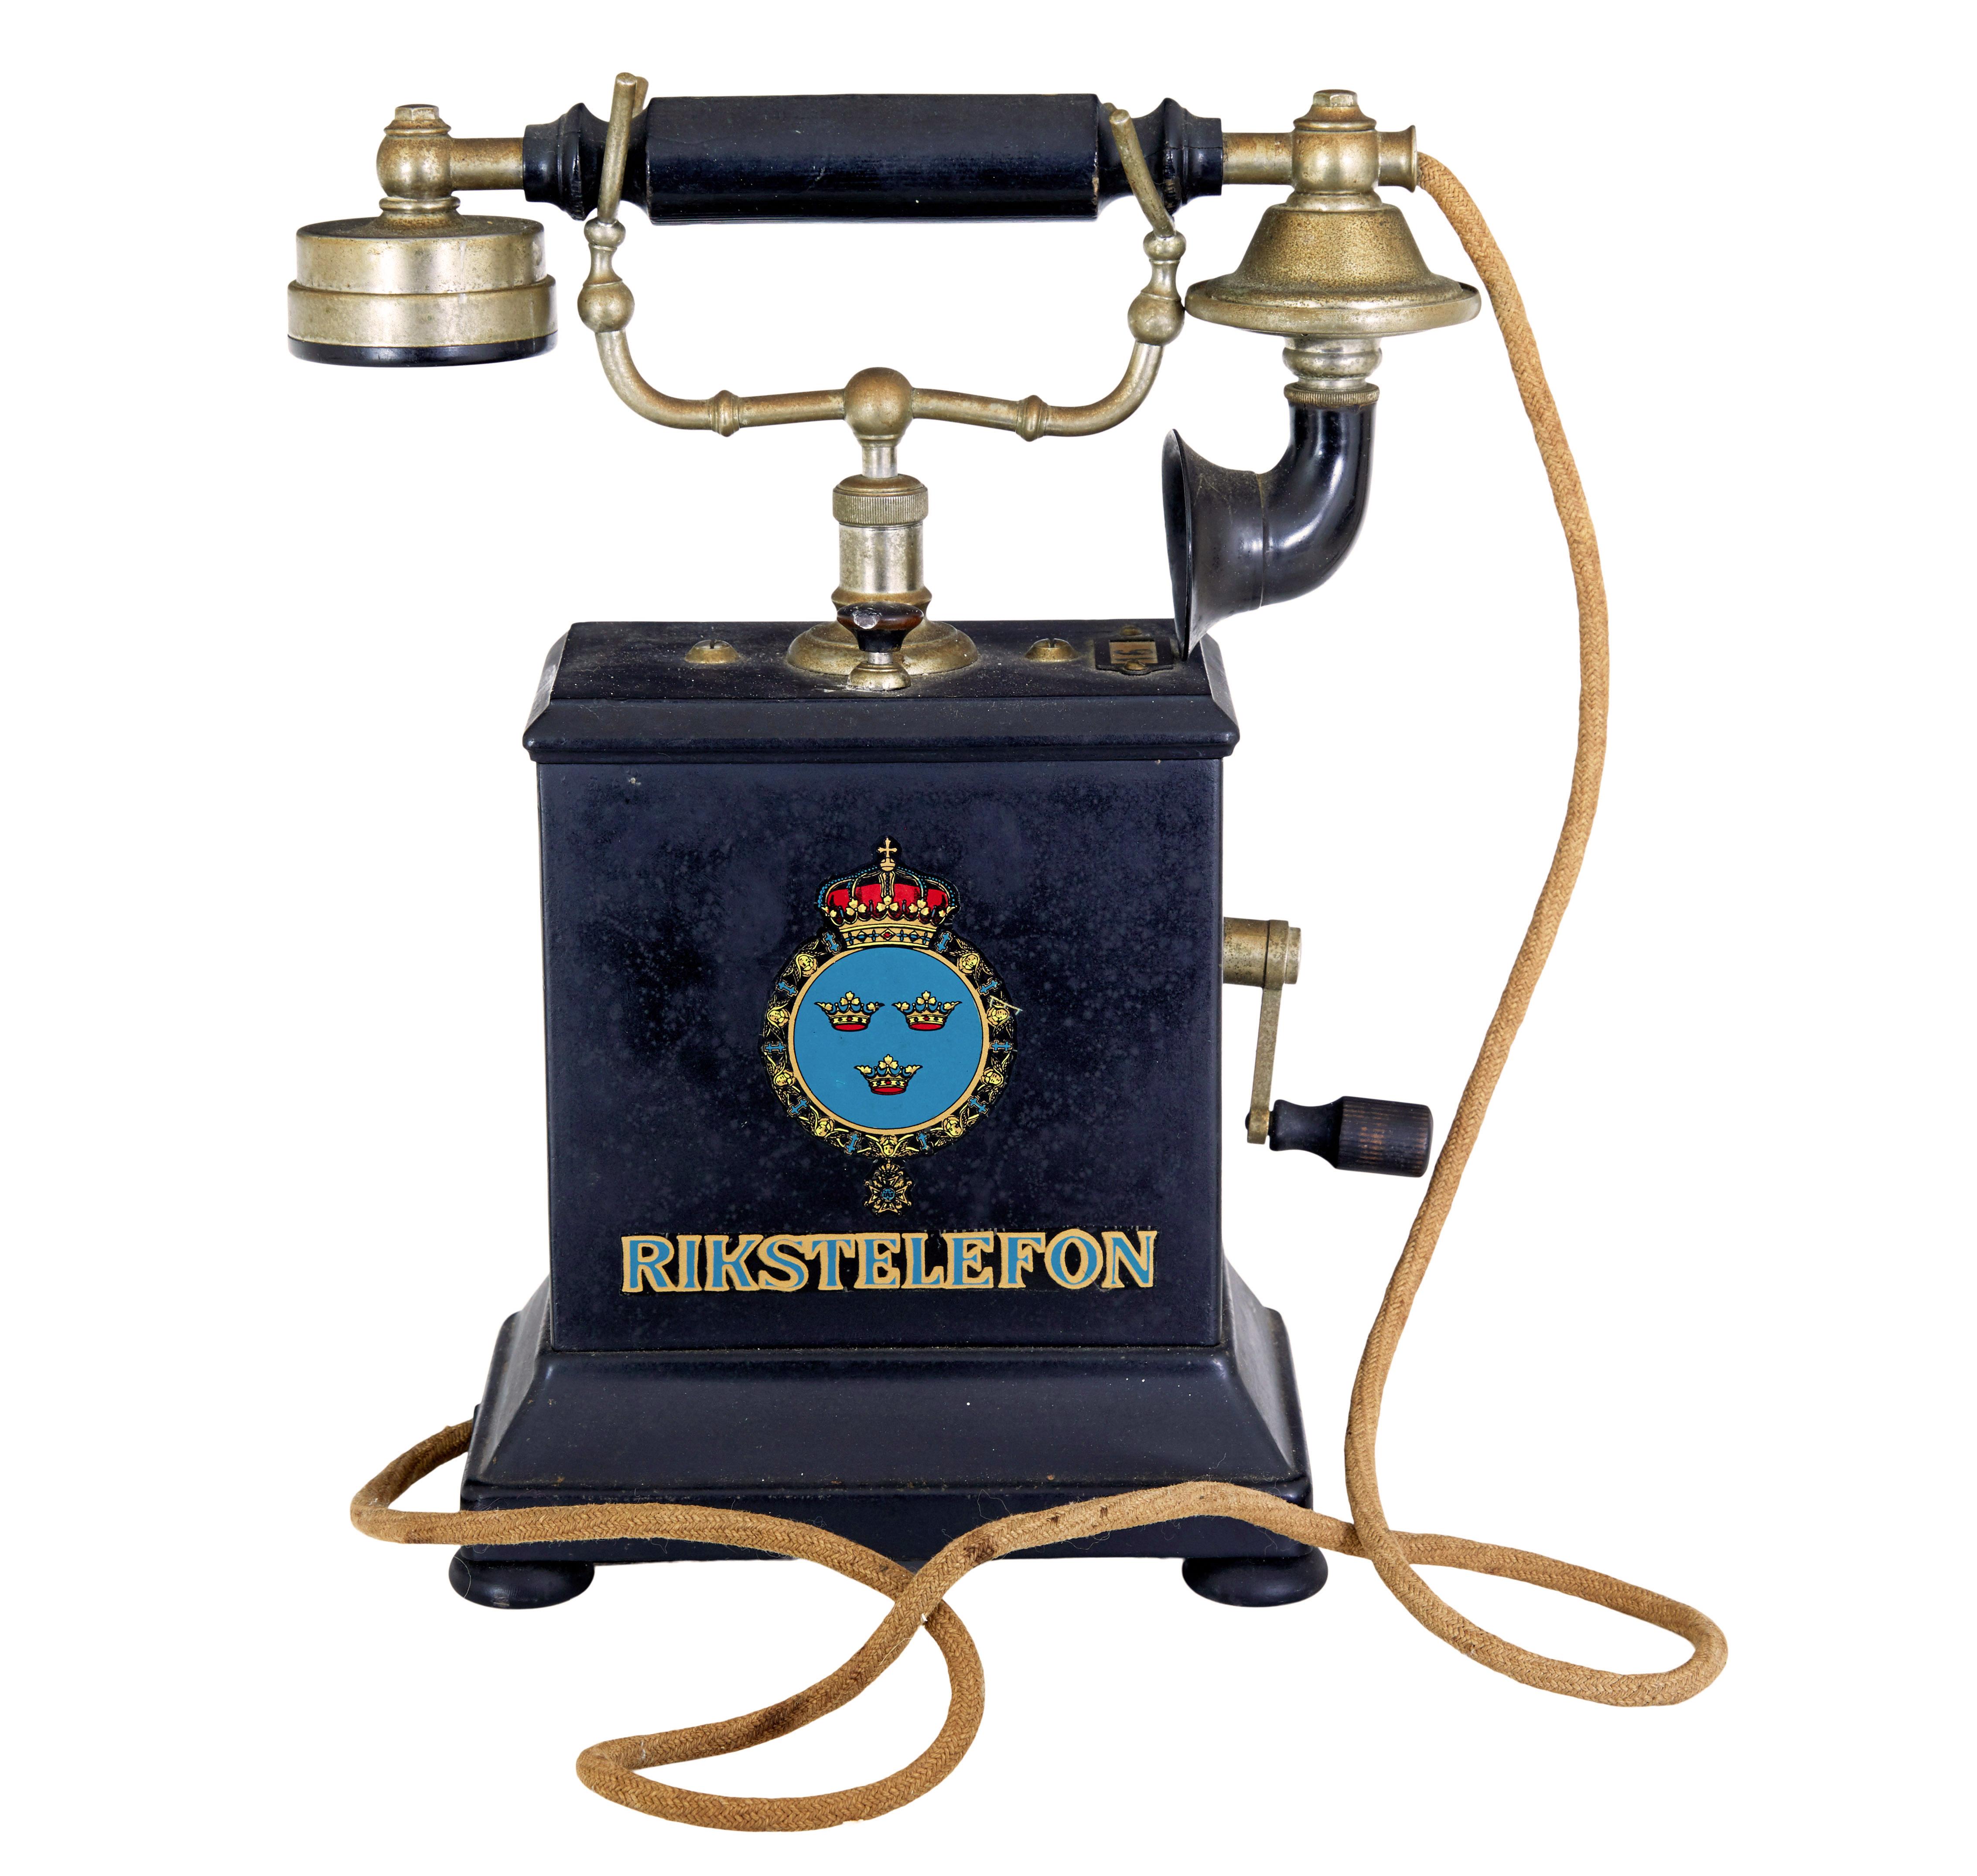 Téléphone suédois en métal du début du 20ème siècle par rikstelefon circa 1900.

Il s'agit d'un appareil téléphonique en tôle de type rikstelefon, probablement plus précoce que daté.  Rikstelefon a été le fournisseur de réseau national du 19e siècle